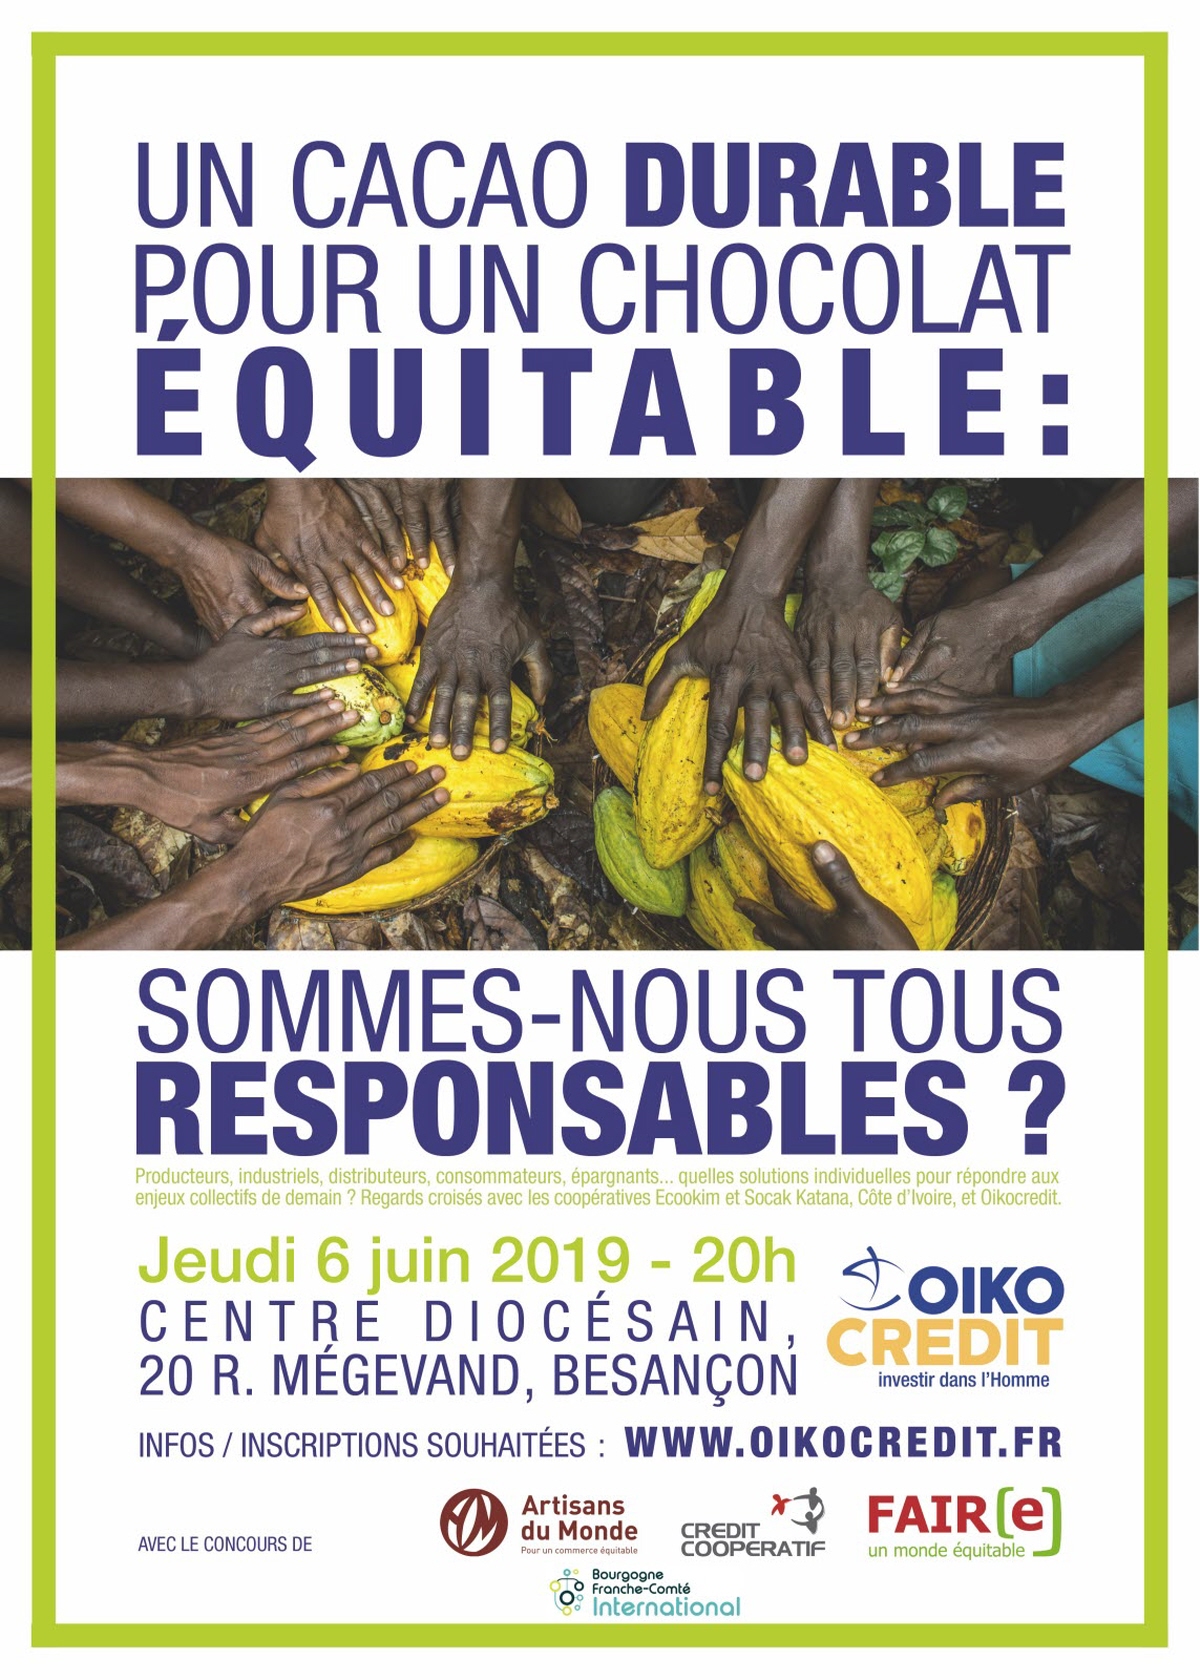 Oikocredit : Un cacao durable pour un chocolat équitable ?